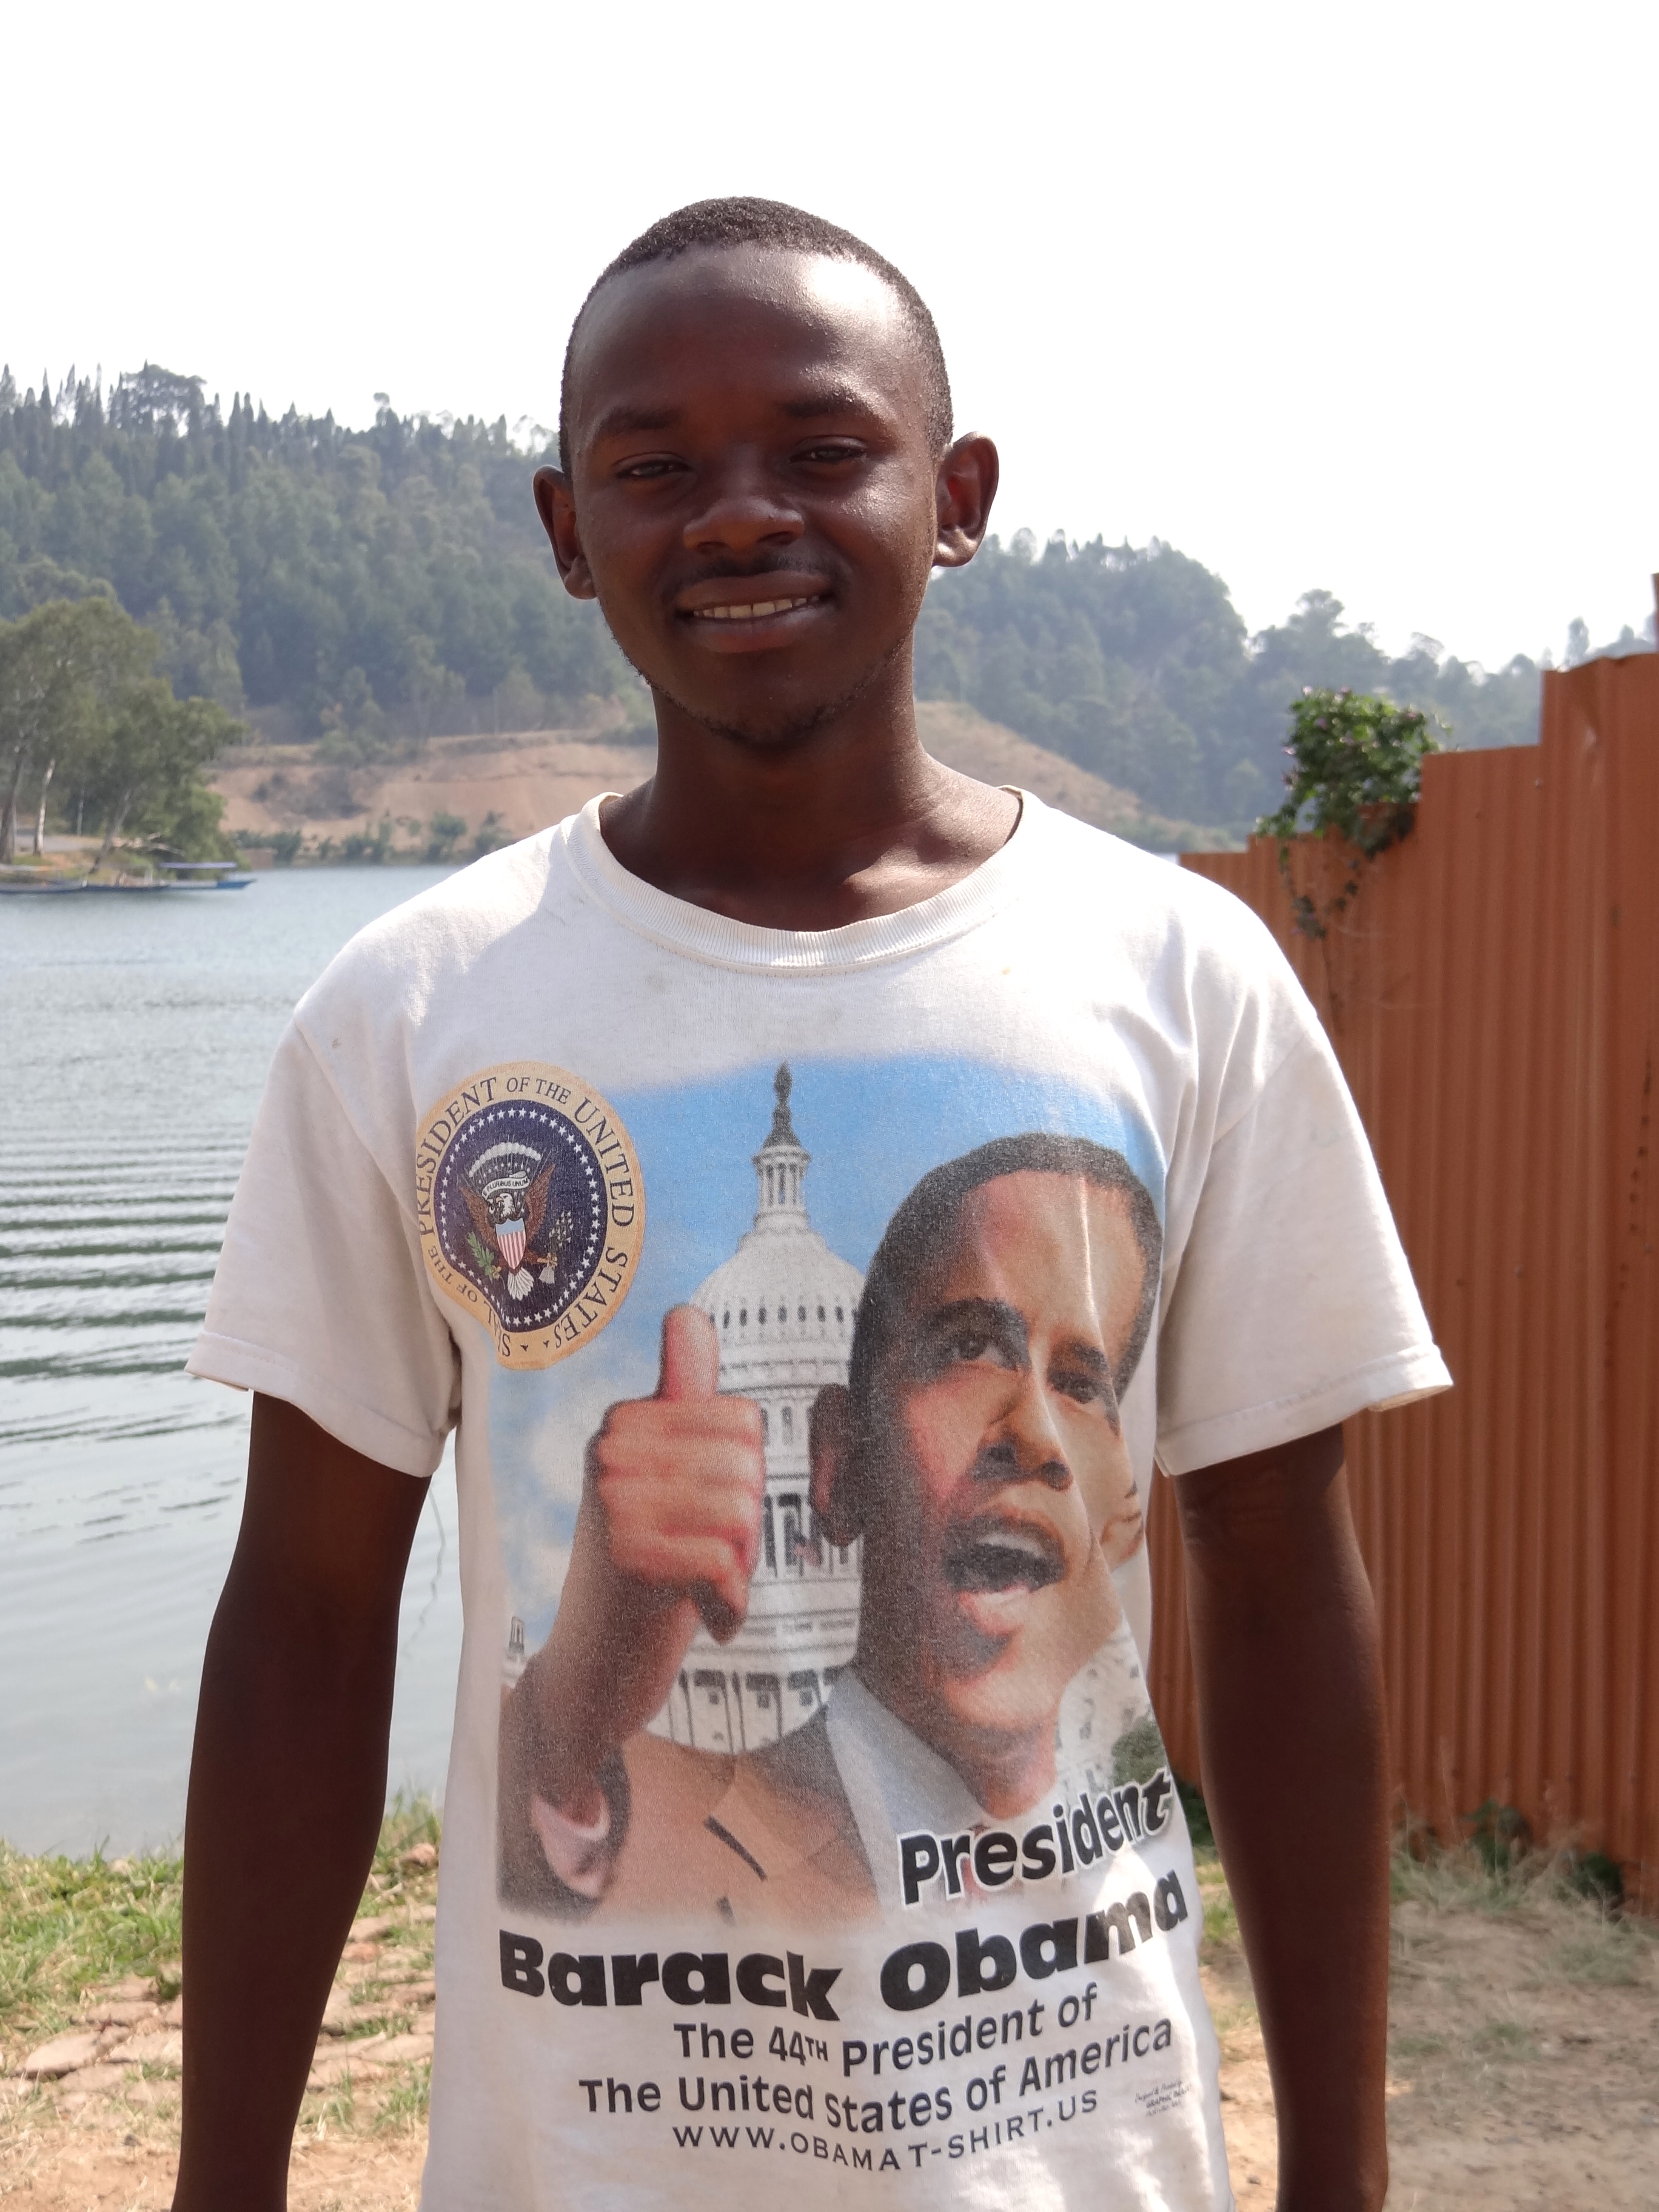 Young Man with Barack Obama T-Shirt - Karongi-Kibuye - Western Rwanda